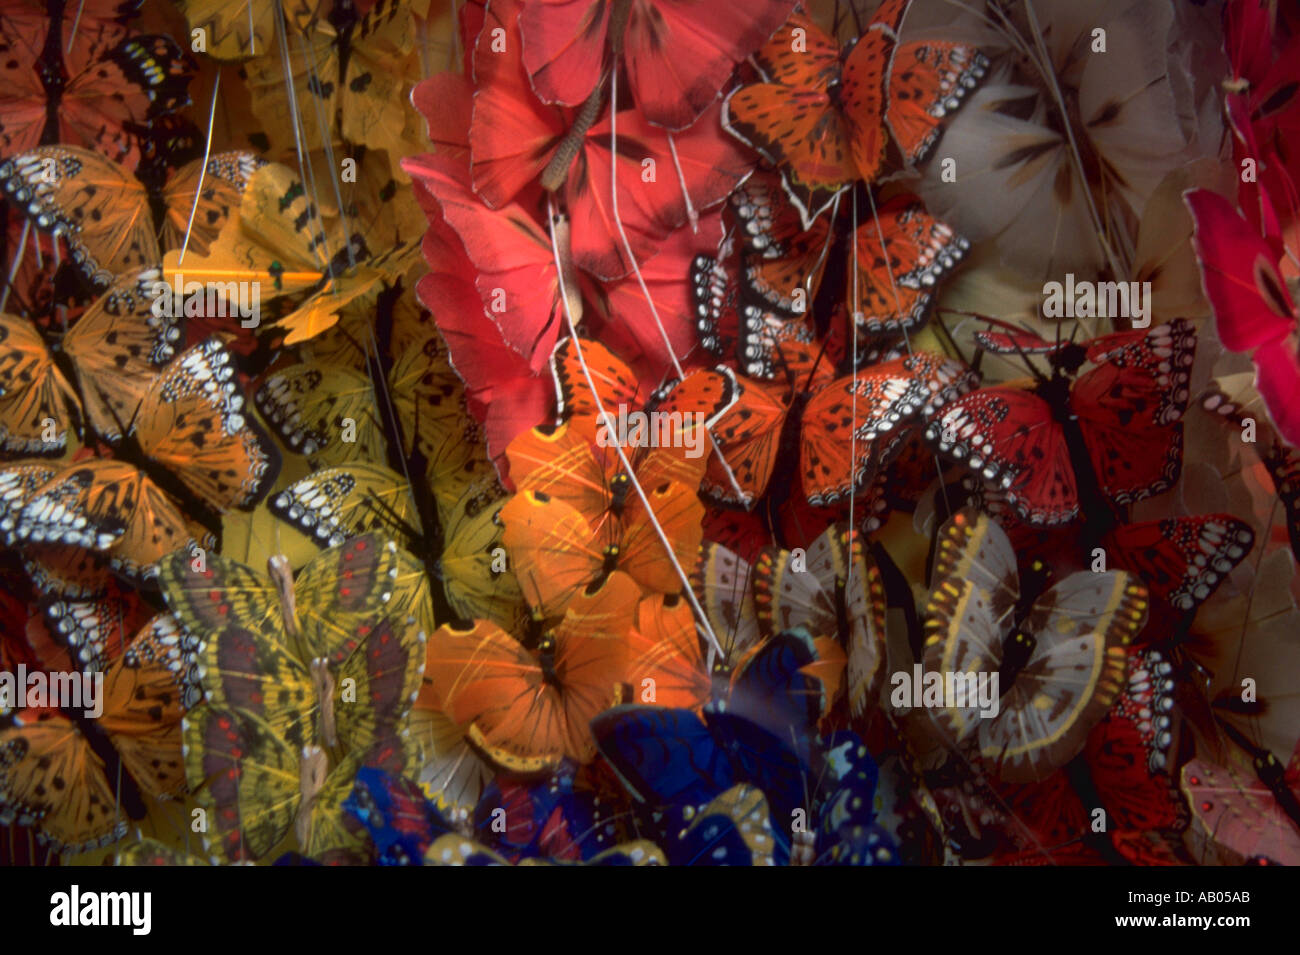 Papillons colorés dans une boutique sur la Rue de Paris France Montogrueil Banque D'Images